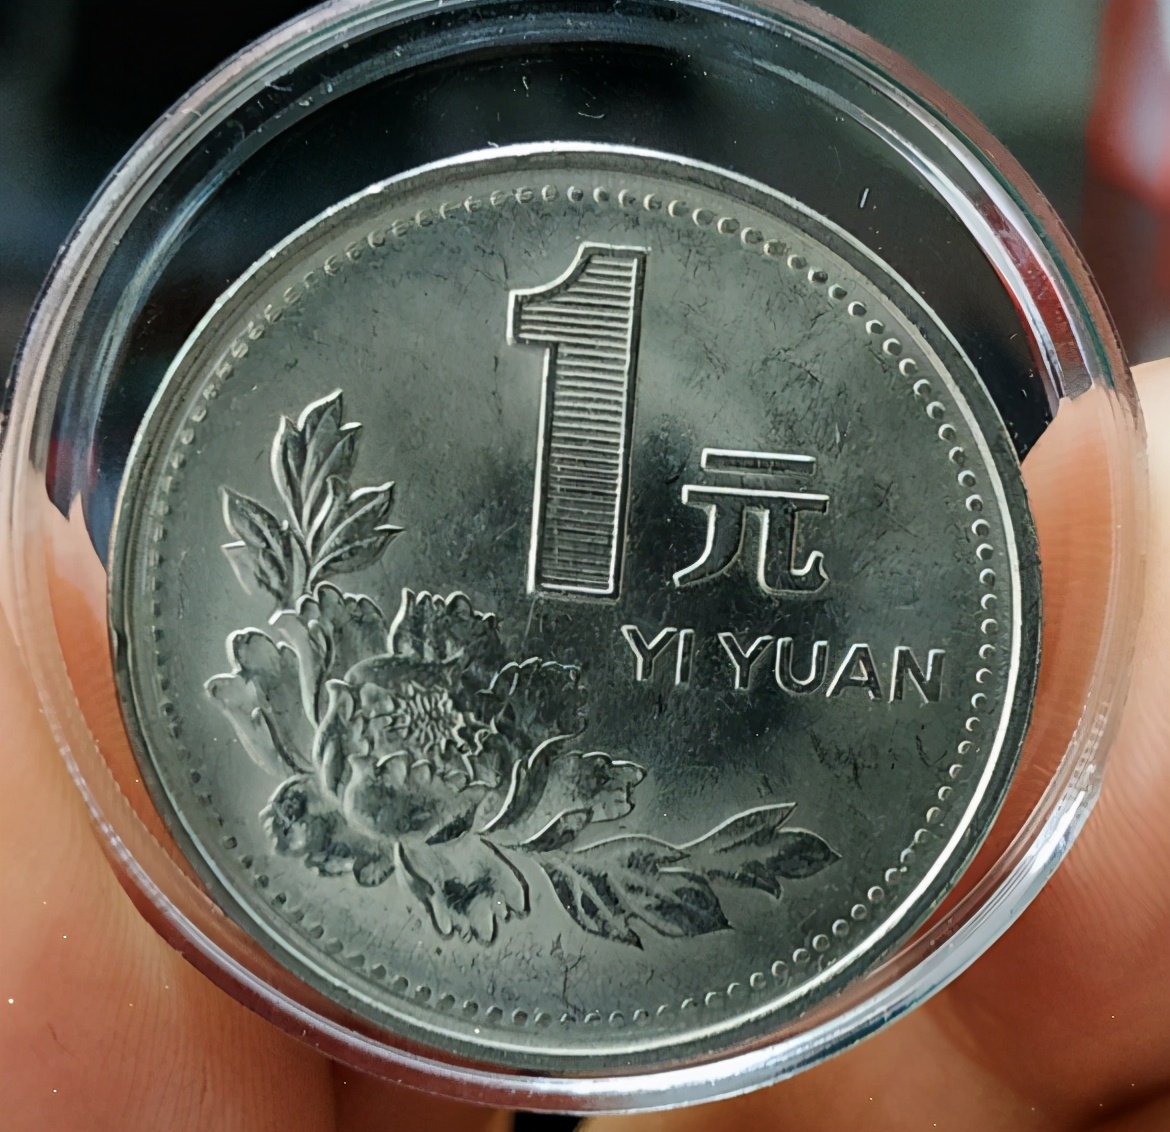 一枚常见的一元硬币,身价高达300元,你见过这种硬币吗